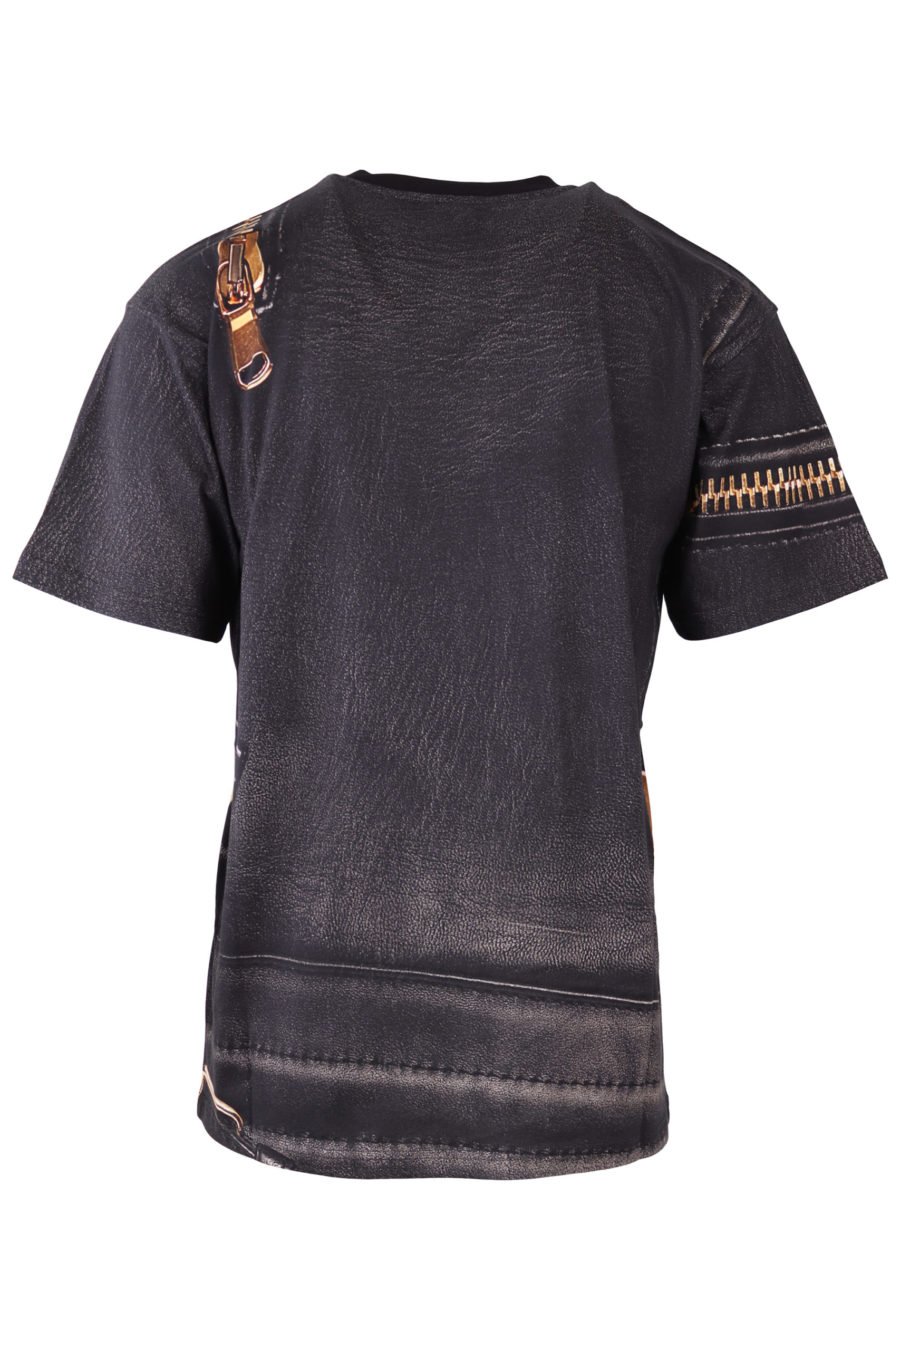 T-shirt Moschino Couture noir avec fermeture éclair dorée - IMG 6516 à l'échelle